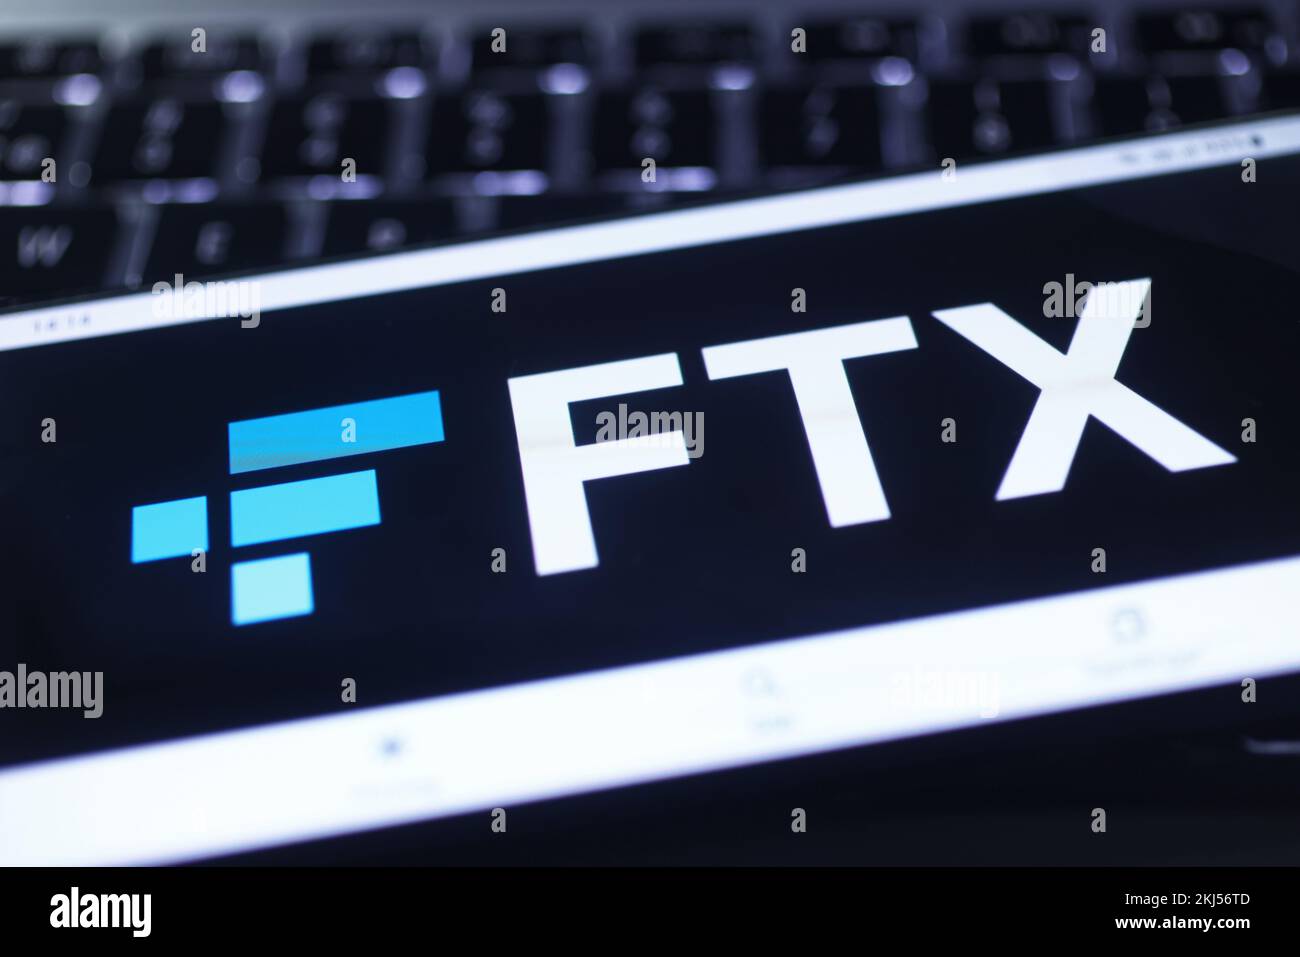 FTX-Logo. FTX ist eine auf den Bahamas basierende Kryptowährungsbörse. Stockfoto